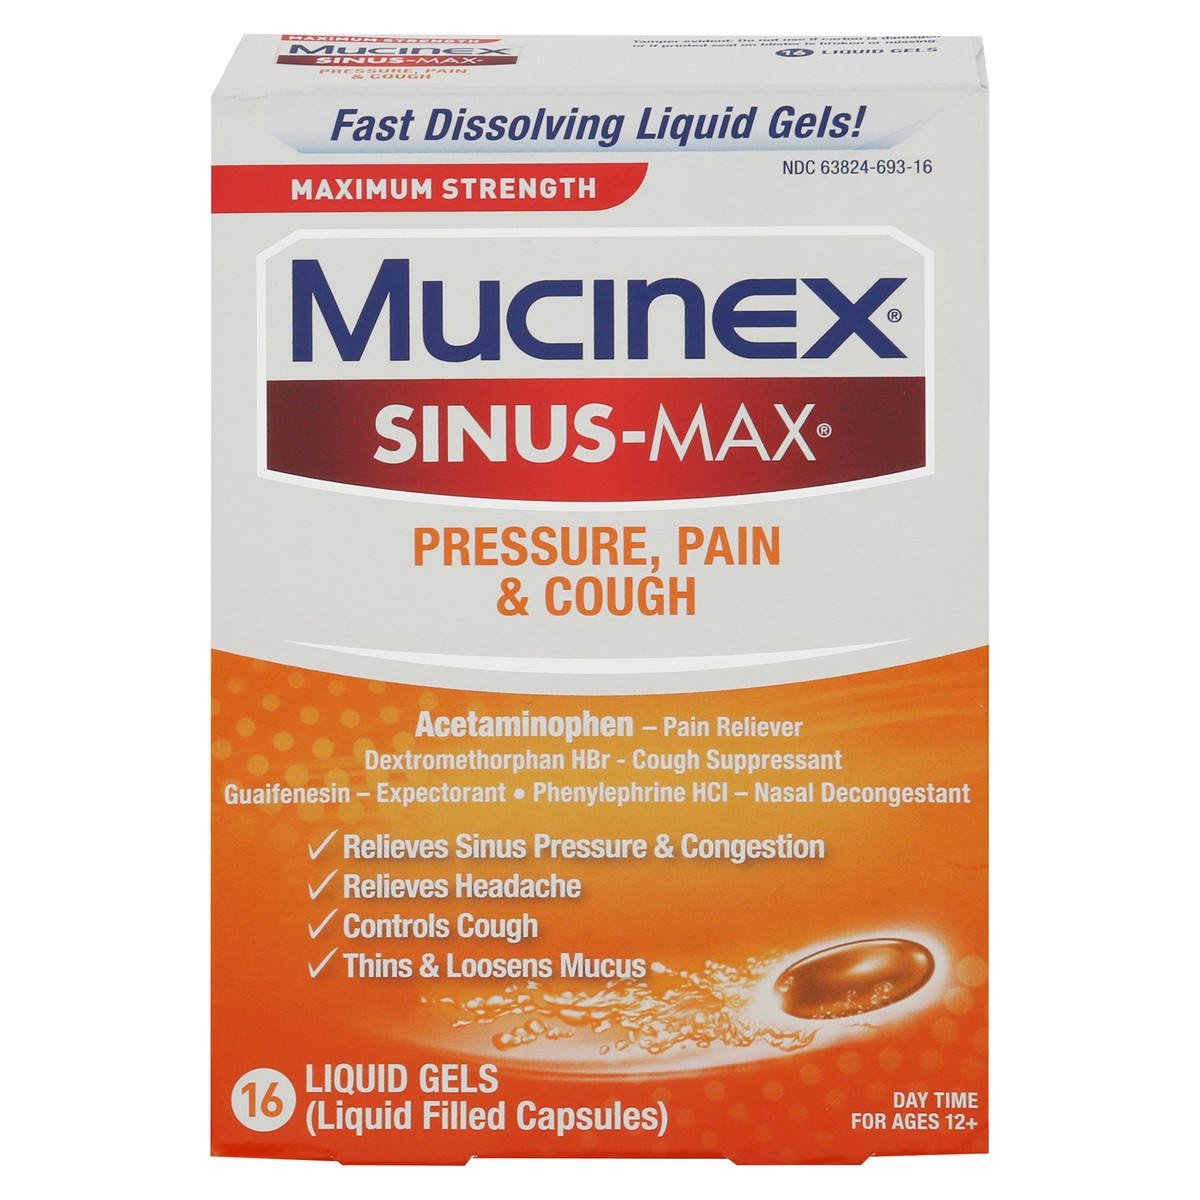 slide 4 of 13, Mucinex Sinus-Max Max Strength Pressure, Pain & Cough Liquid Gels, 16ct, 16 ct